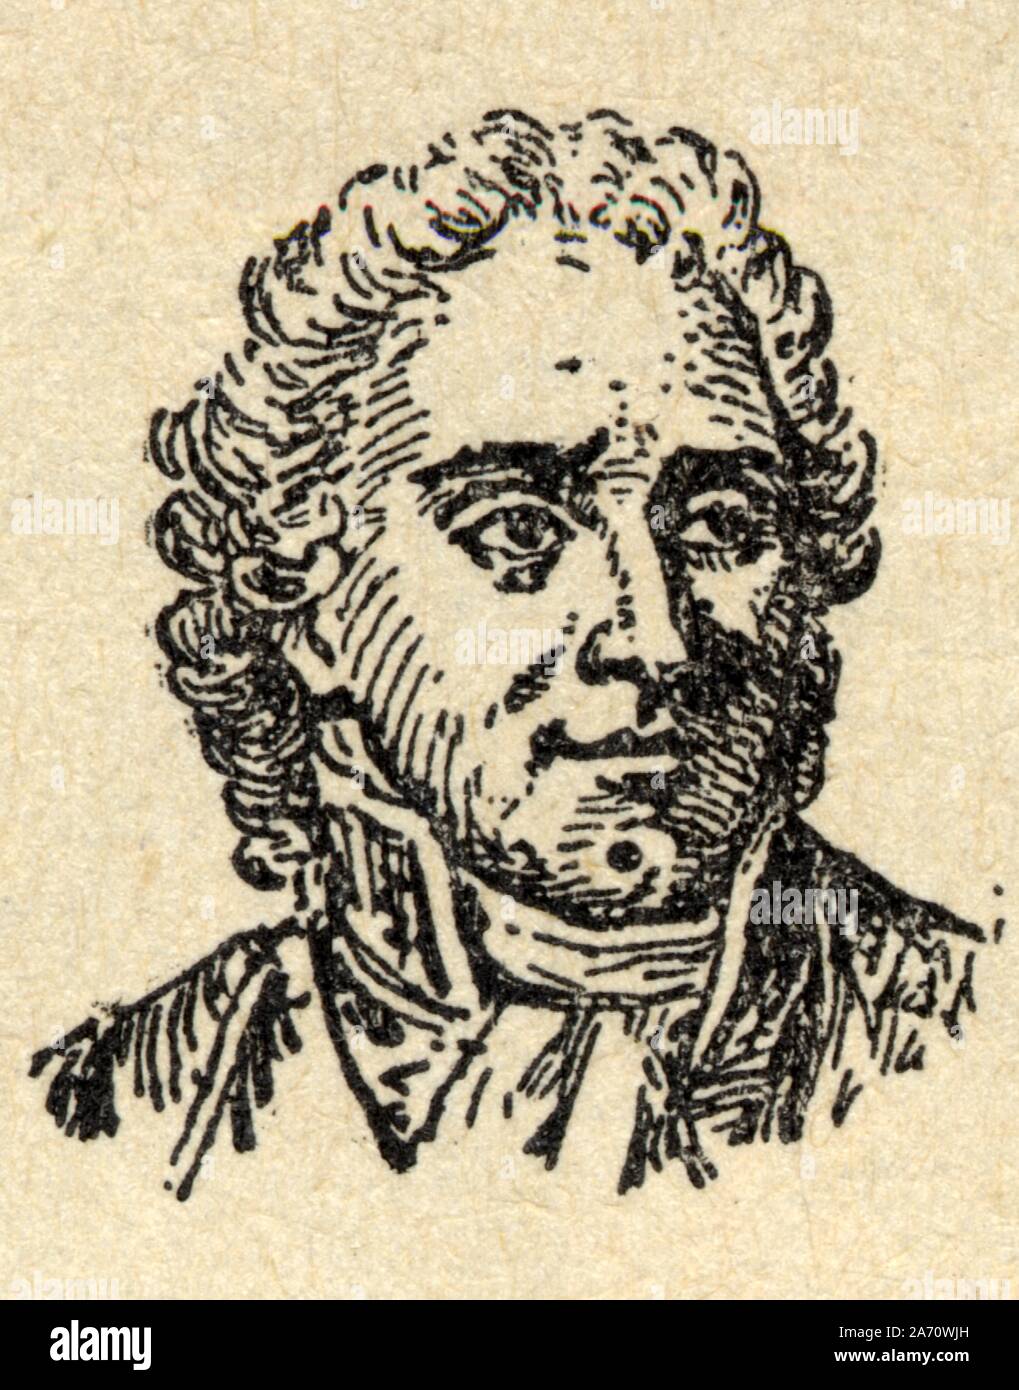 François Joseph Lefebvre, né le 25 octobre 1755 à Rouffach et mort le 14 septembre 1820 à Paris, est un officier général français, maréchal d'Empire Banque D'Images